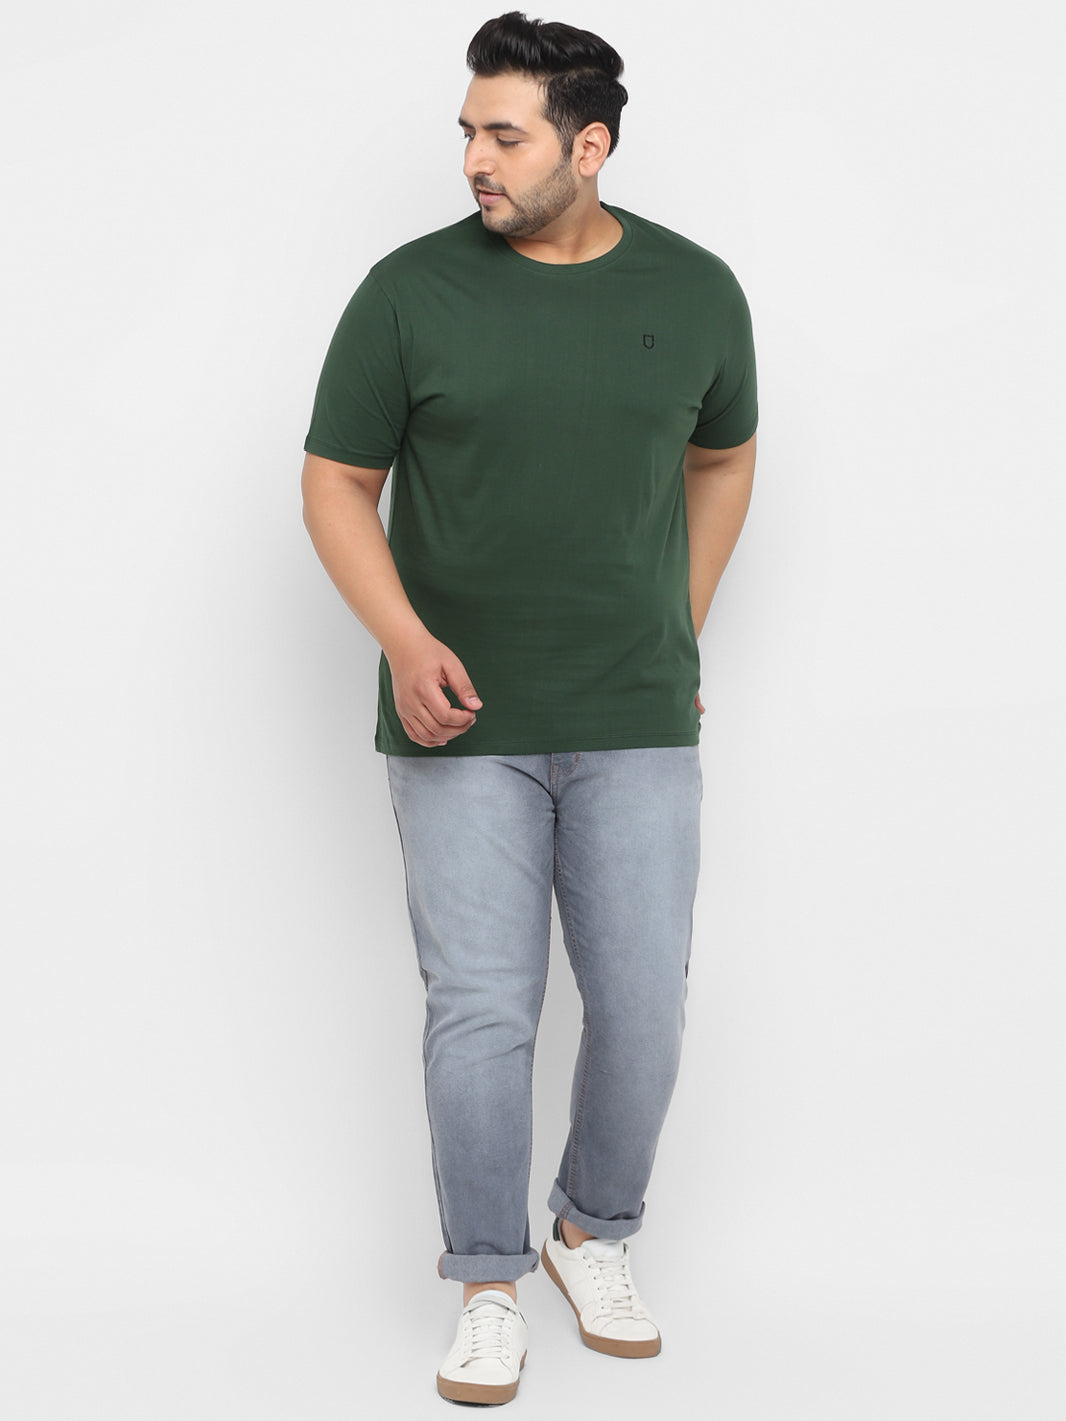 Plus Men's Dark Green Solid Regular Fit Round Neck Cotton T-Shirt ...